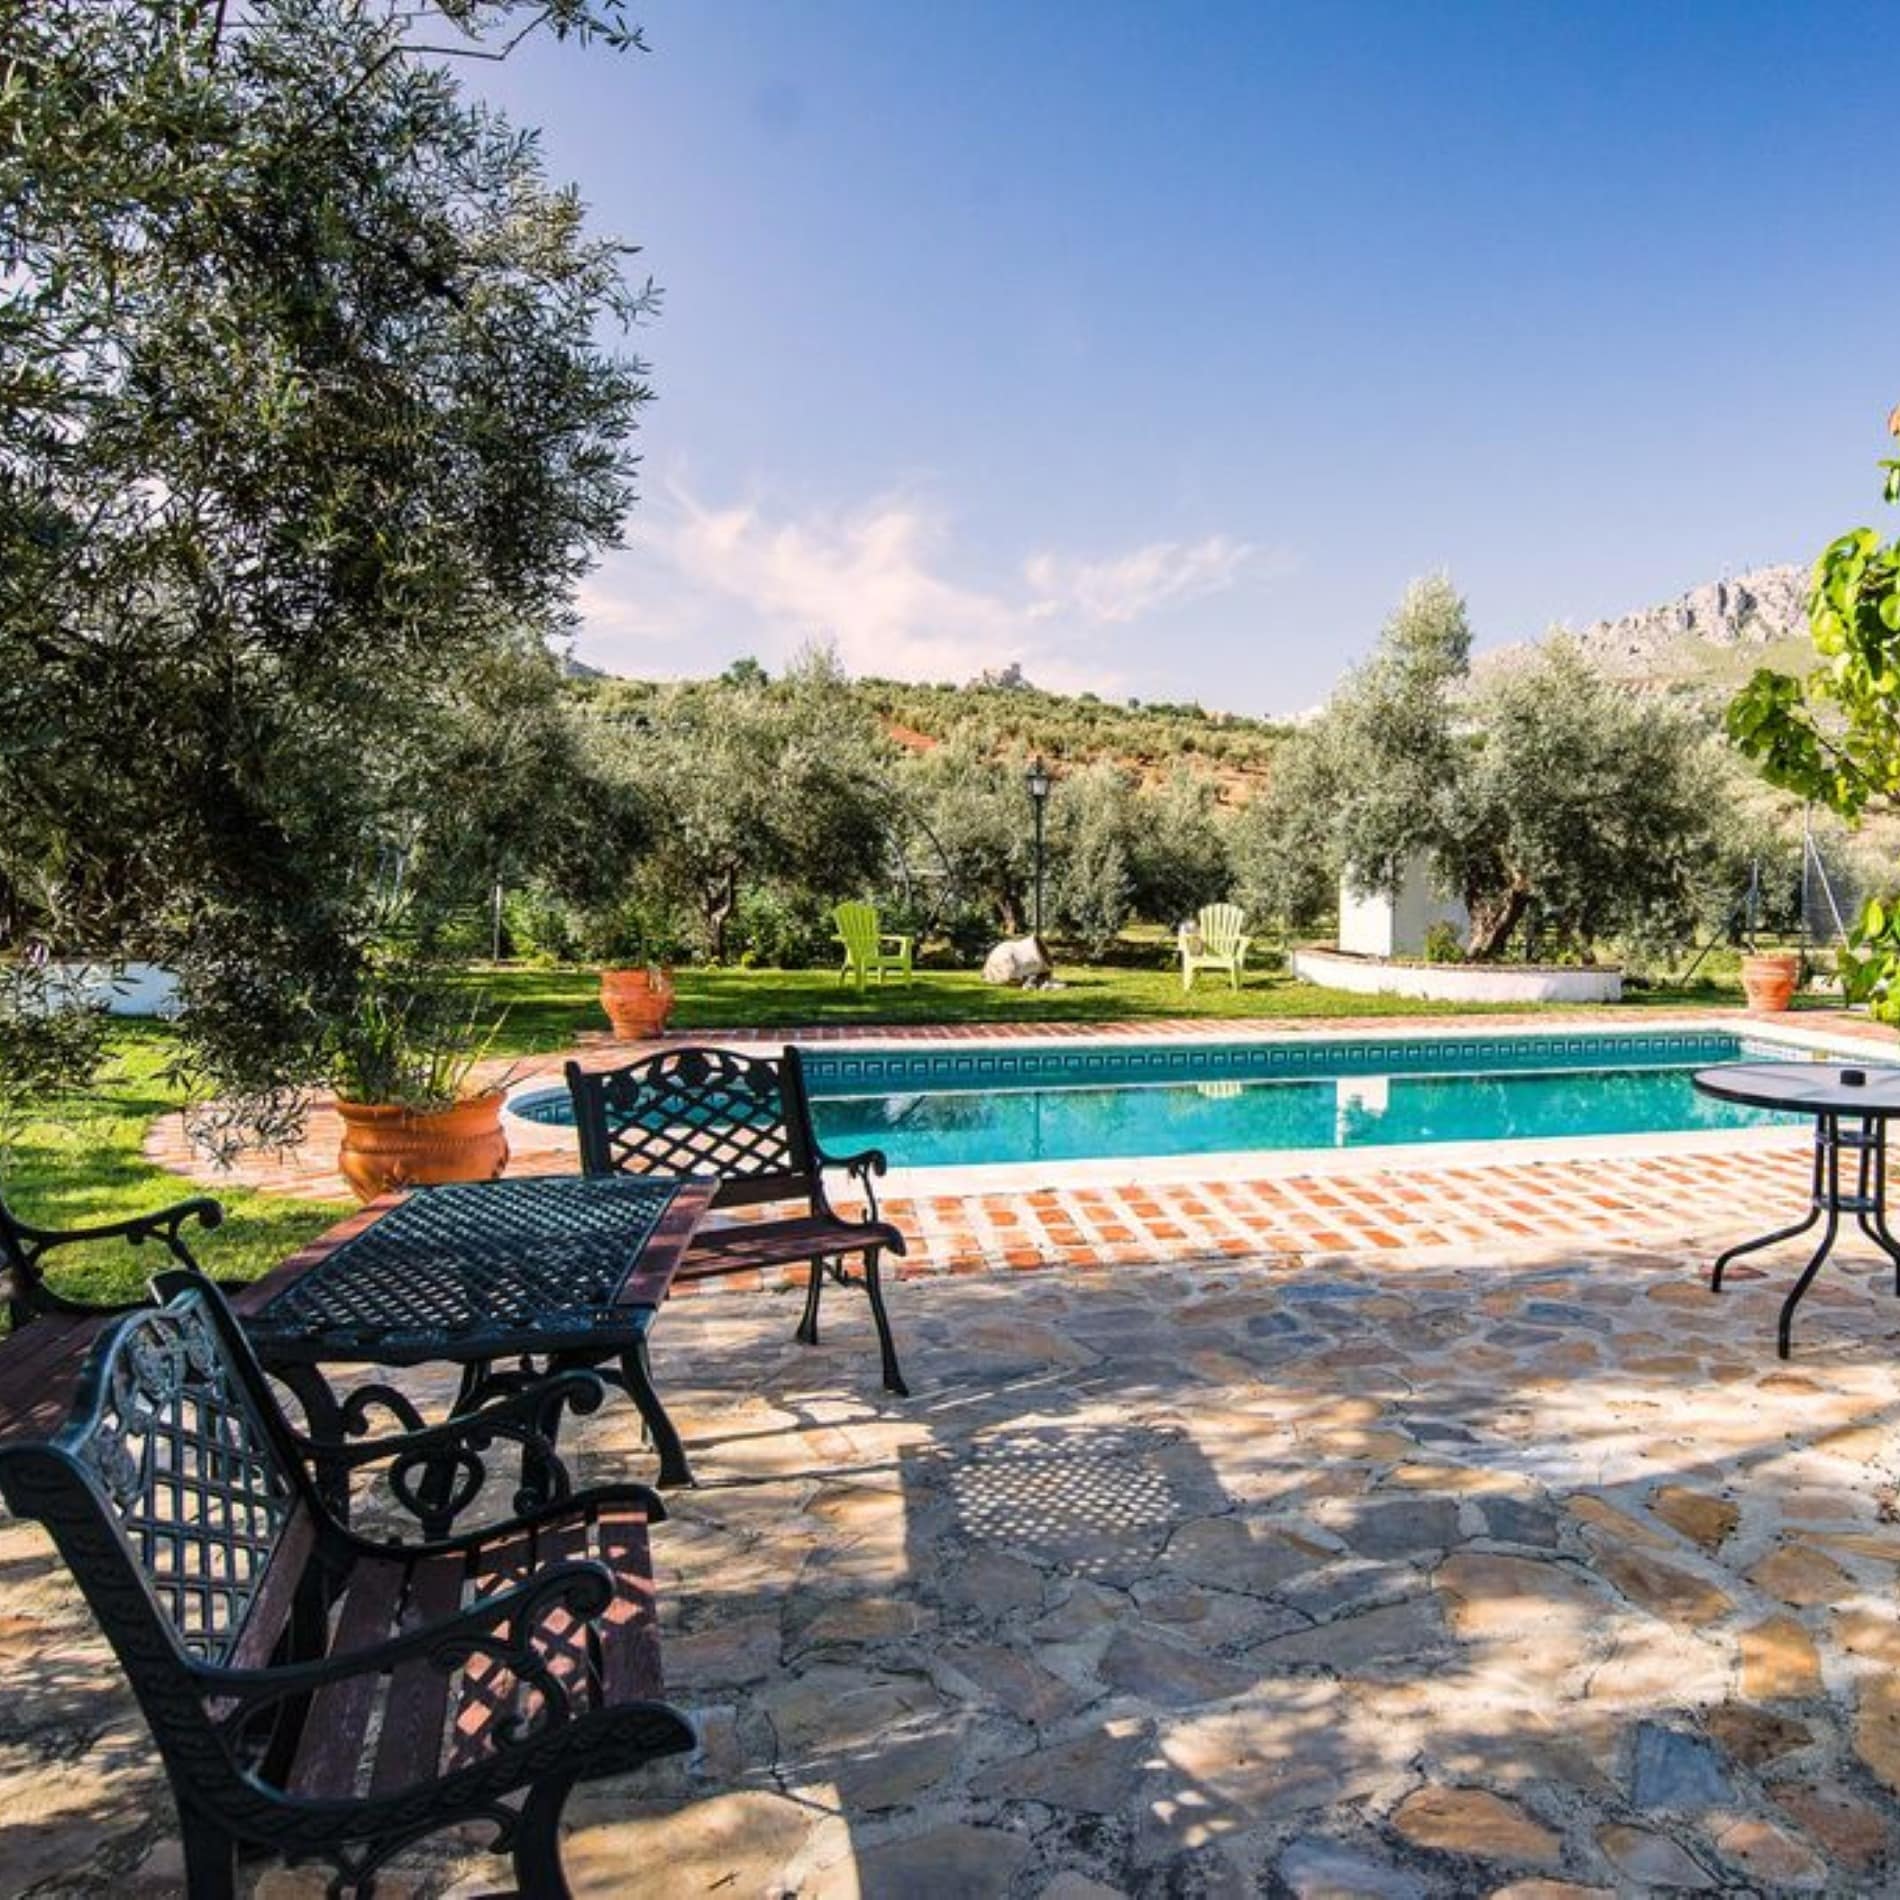 Amplio jardín con piscina de una casa rural de agroturismo en Andalucía